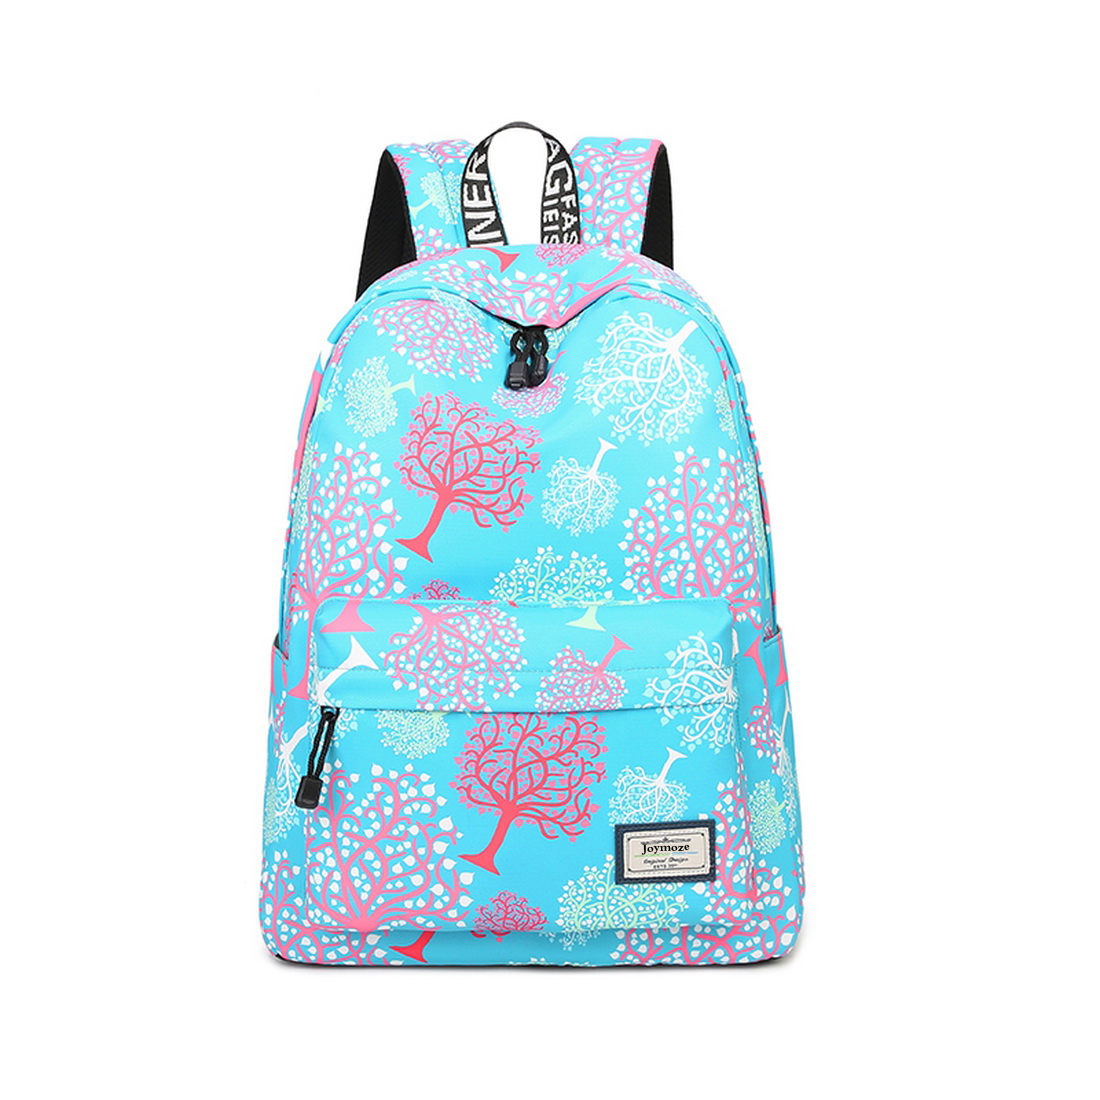 Joymoze Waterproof School Backpack for Girls Middle School Cute Bookbag Daypack for Women Tree 843